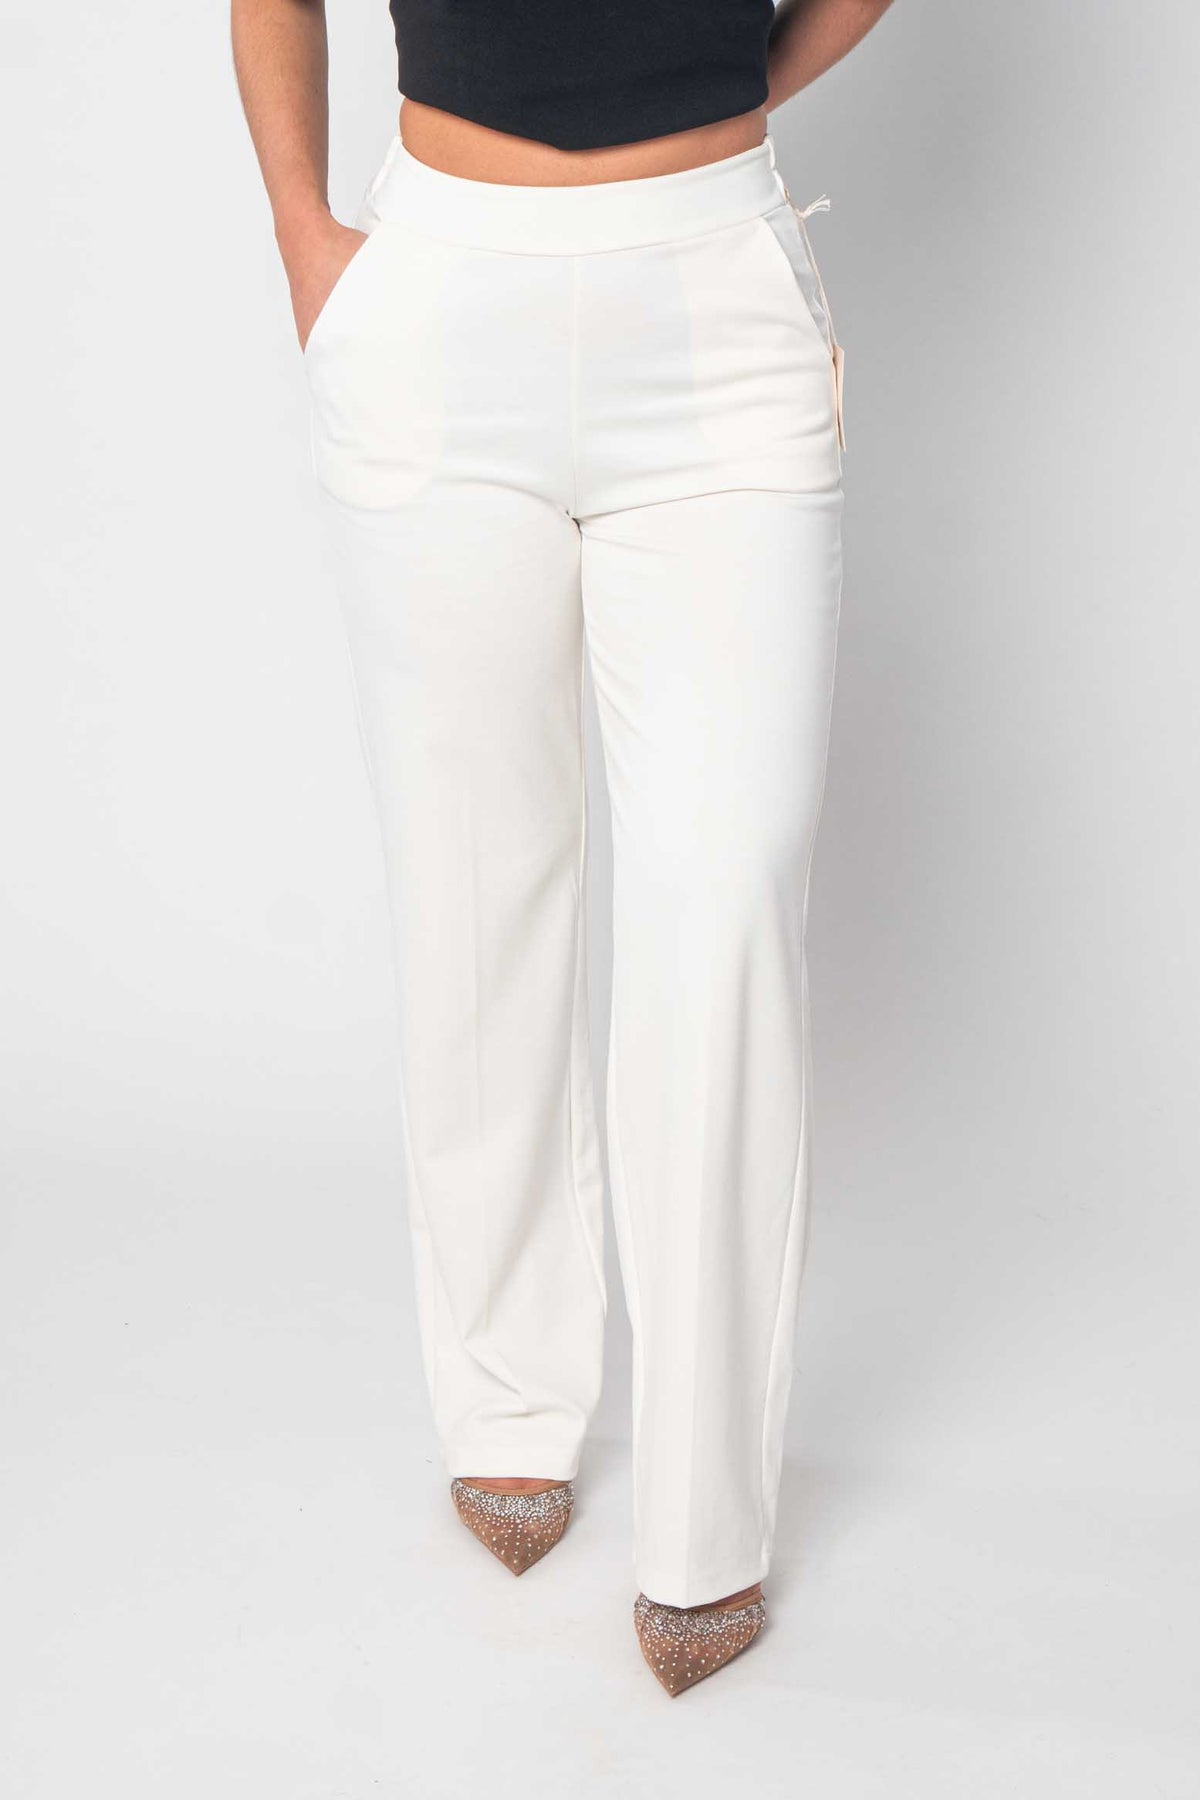 Comfort Hose ausgestellt - Weiß/Creme